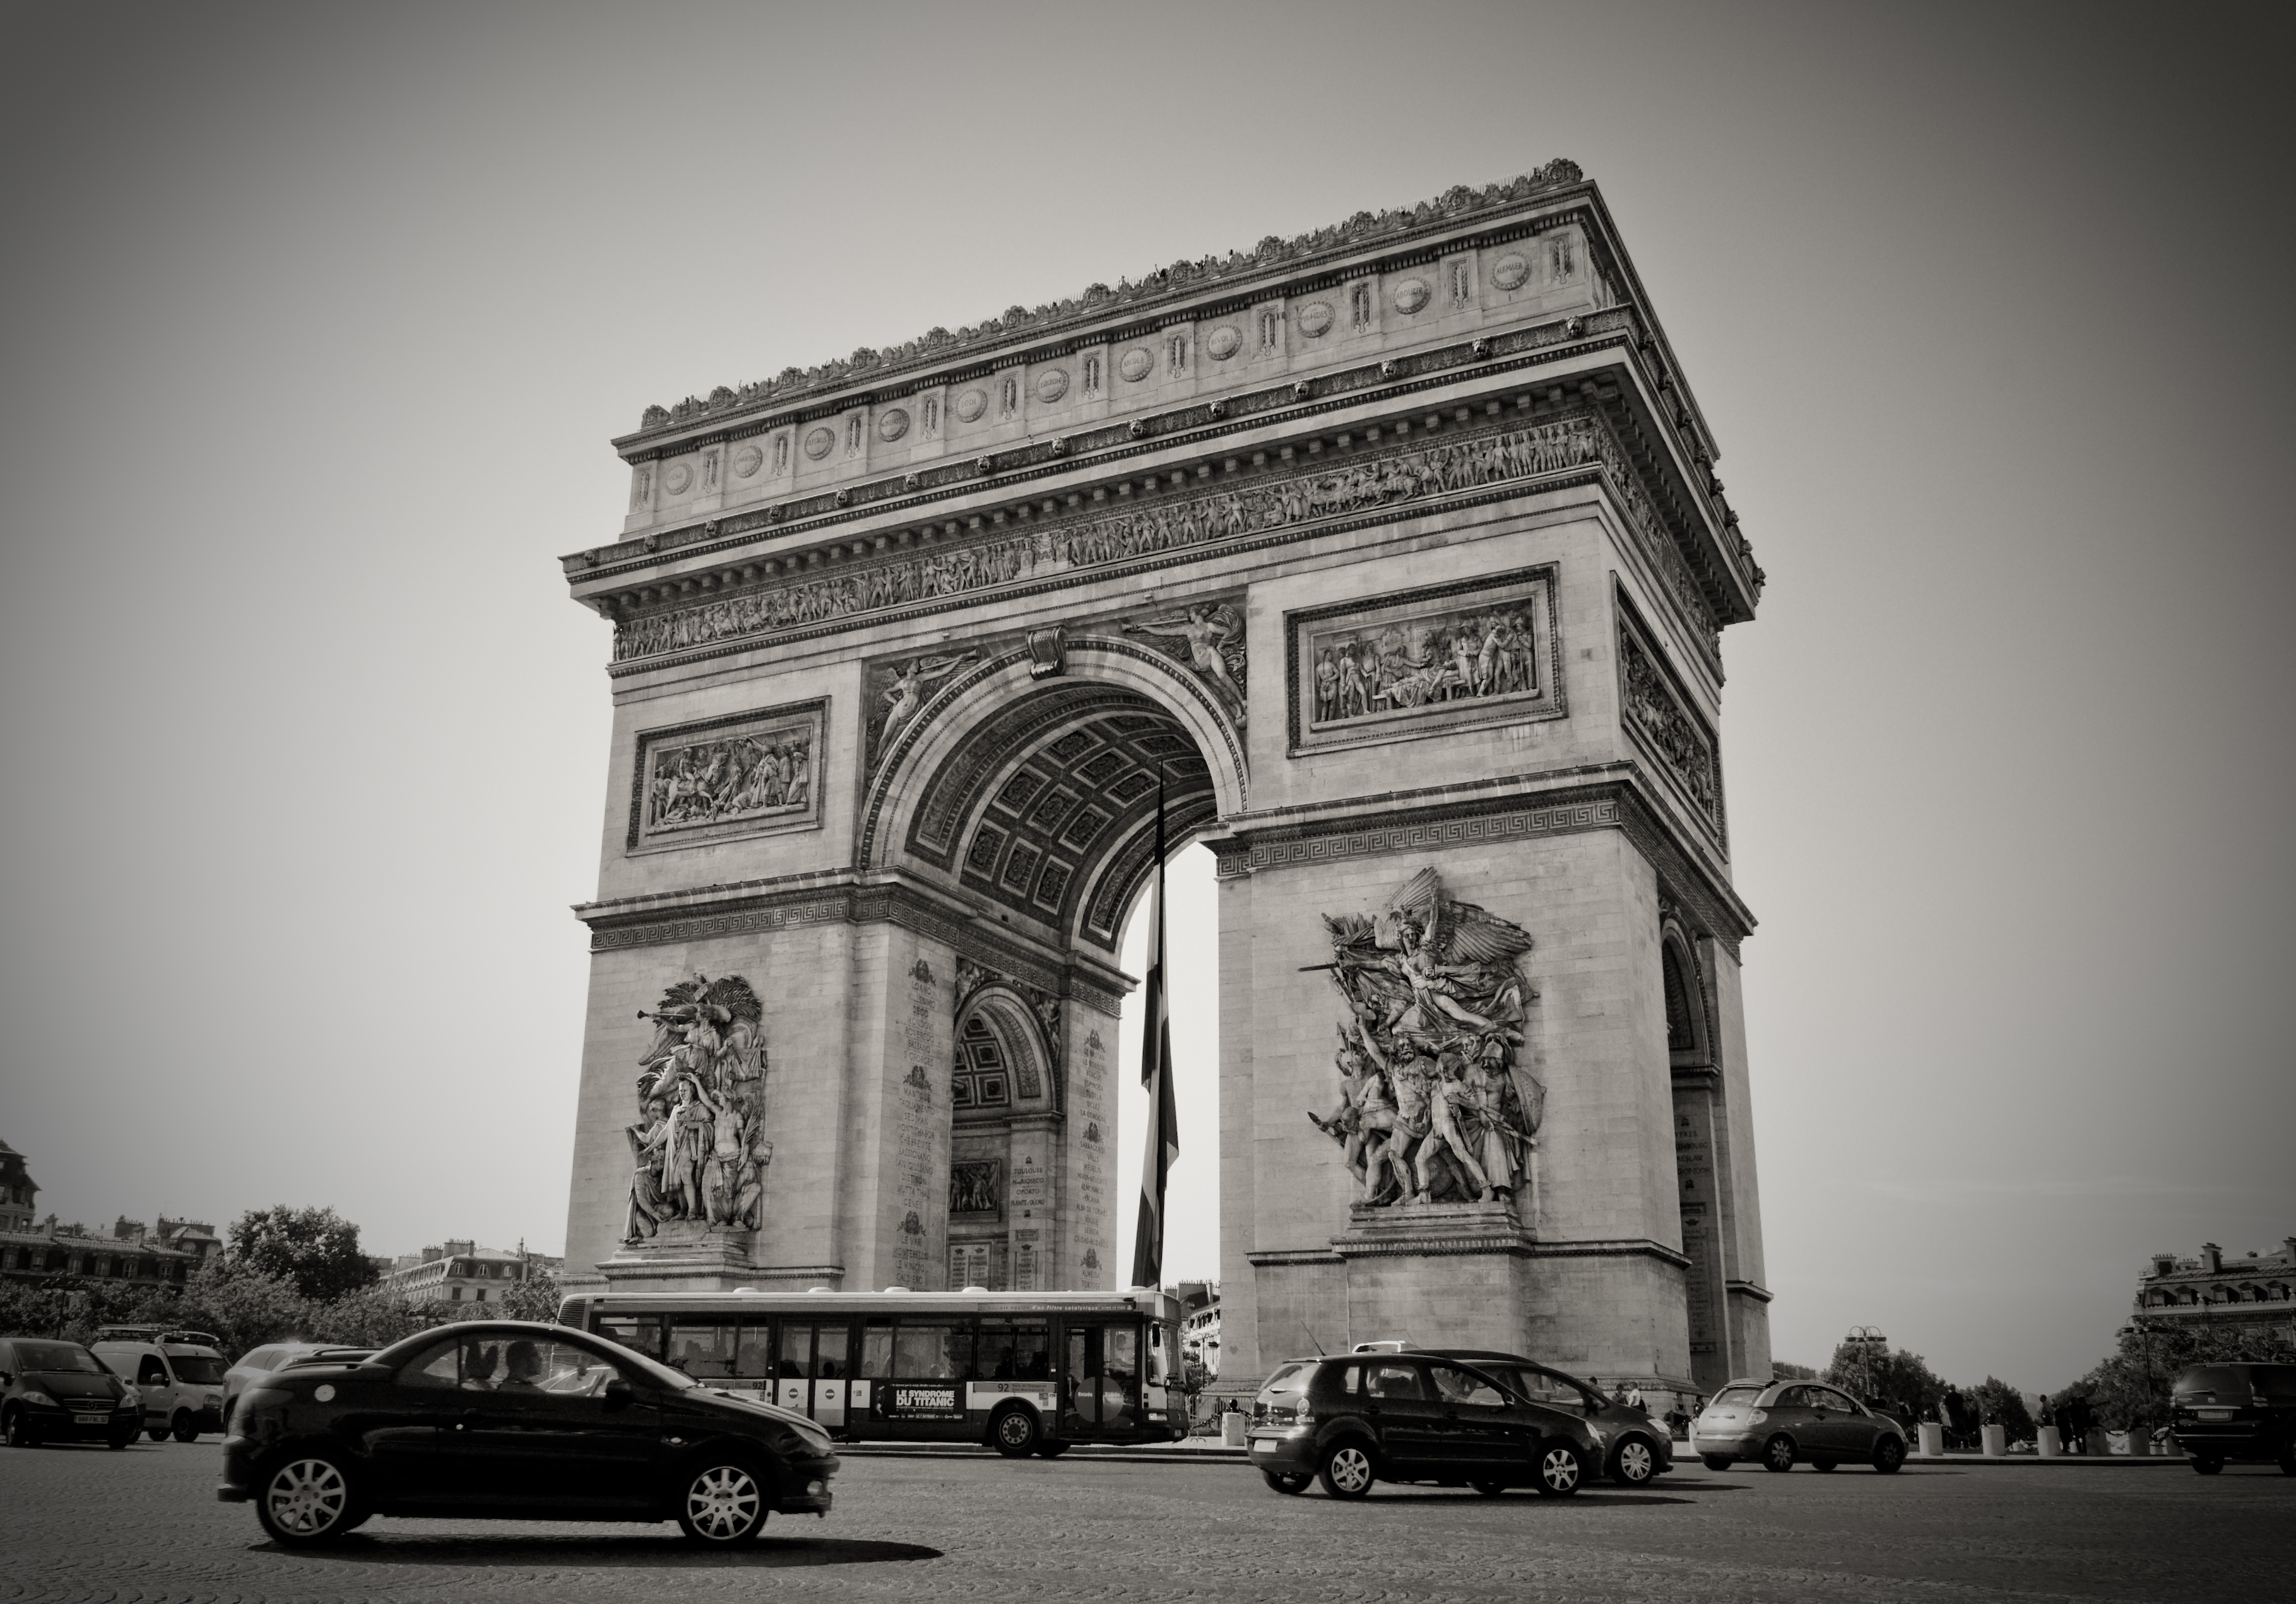 フリー画像 人工風景 建造物 建築物 凱旋門 エトワール凱旋門 門 ゲート フランス風景 パリ モノクロ 写真 フリー素材 画像素材なら 無料 フリー写真素材のフリーフォト